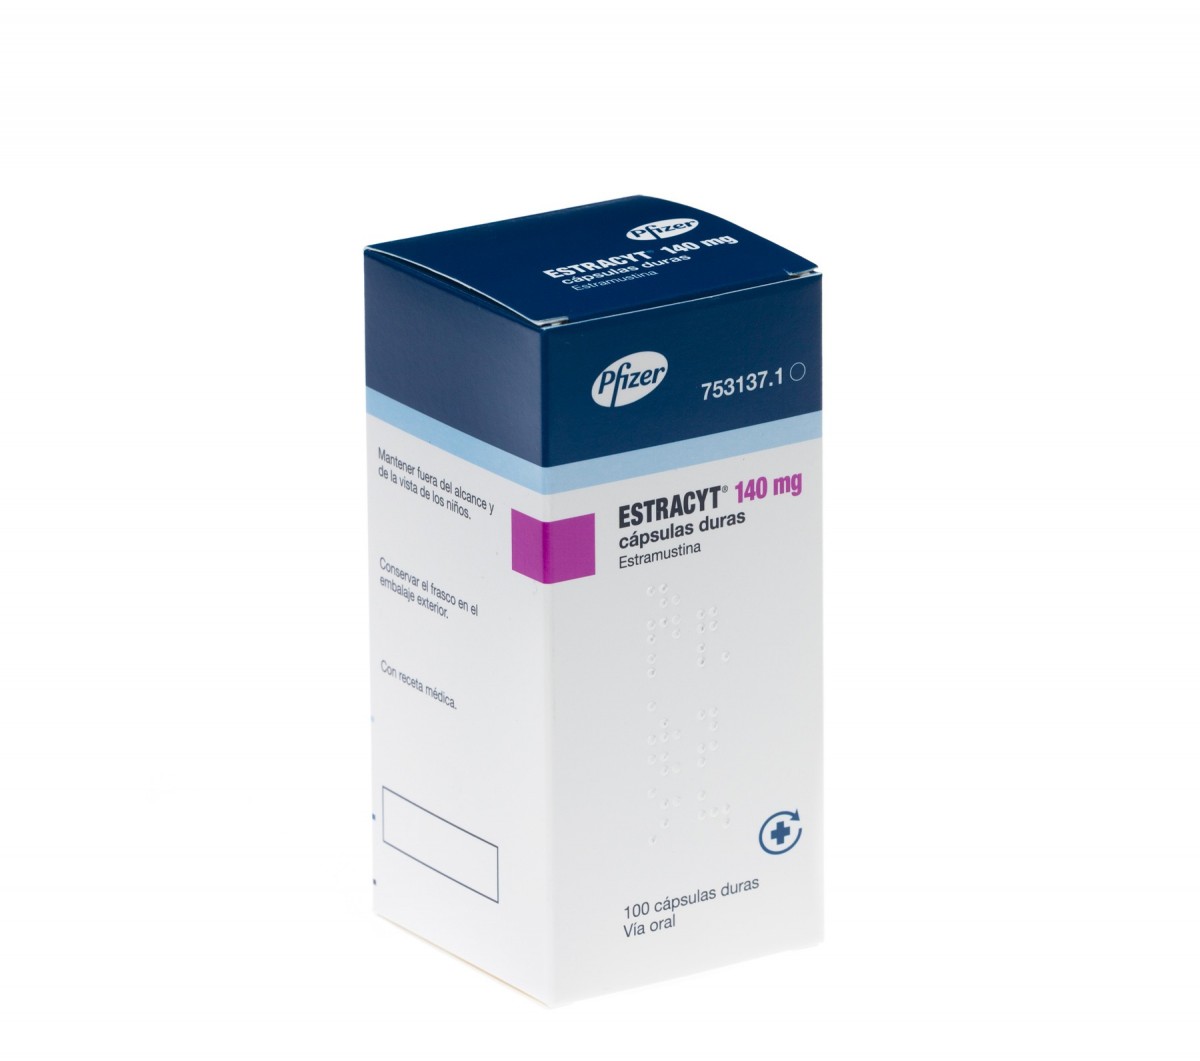 ESTRACYT 140 mg CAPSULAS DURAS, 100 cápsulas fotografía del envase.